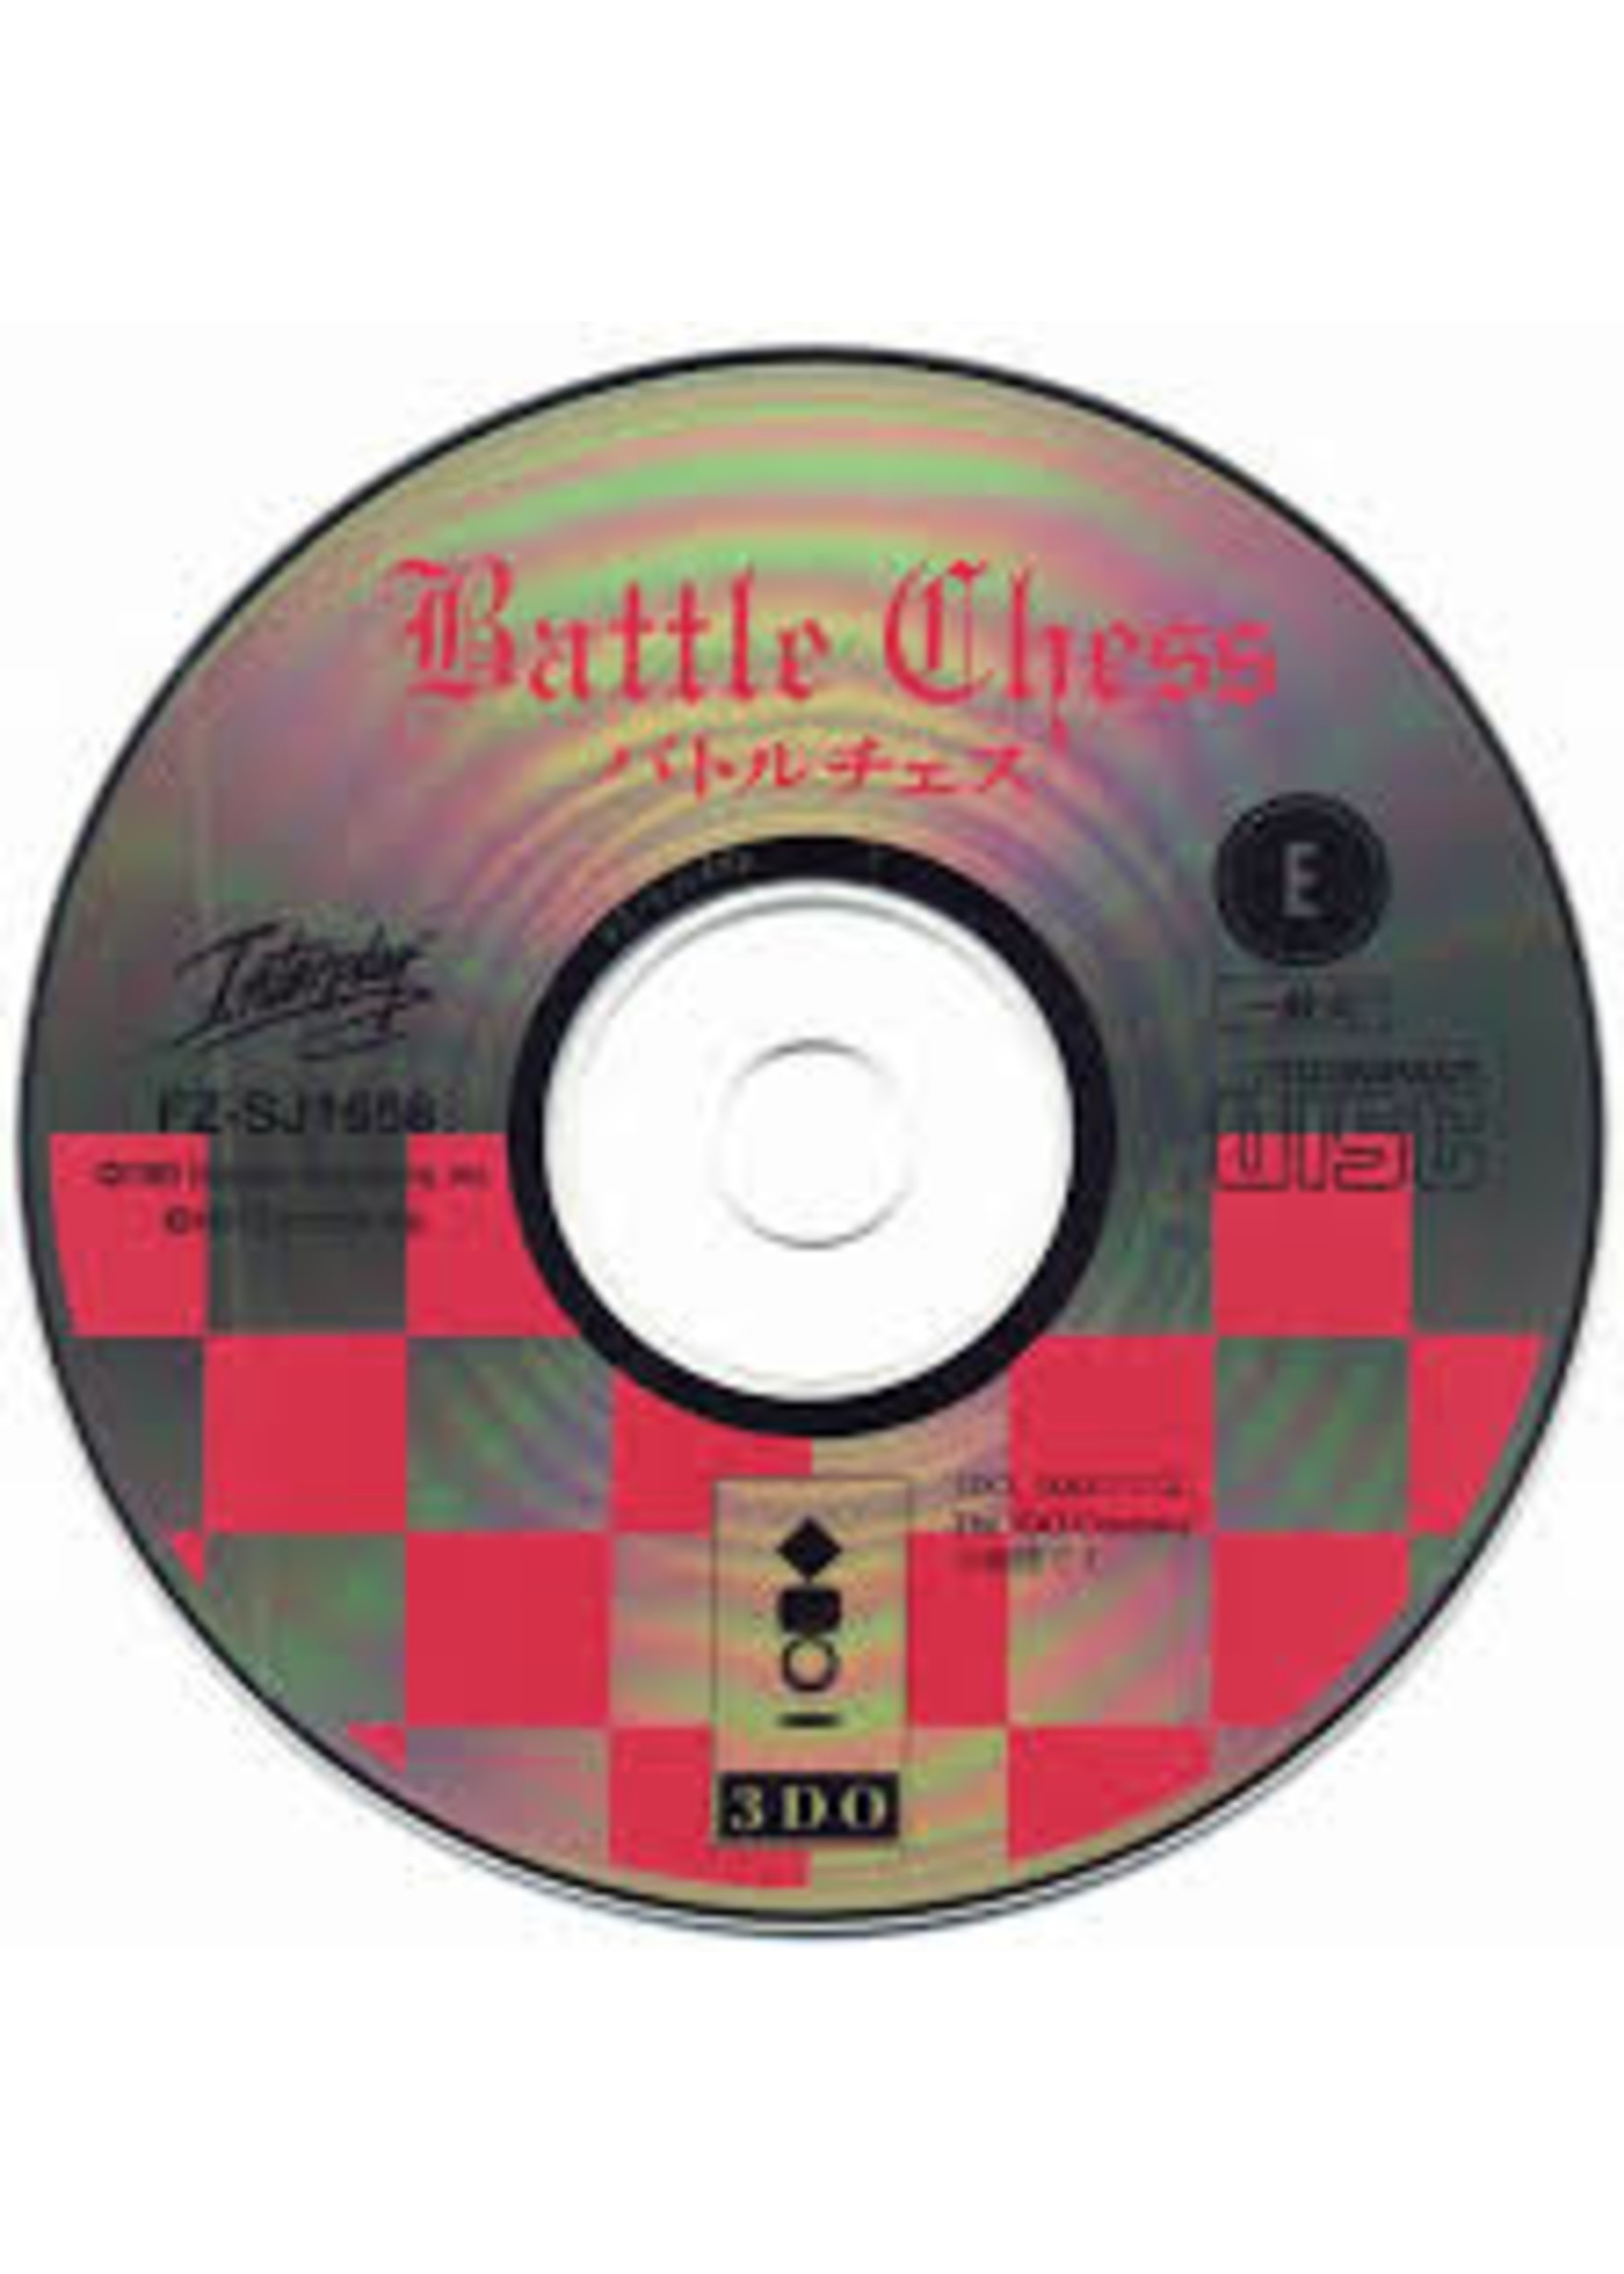 Panasonic 3DO Battle Chess